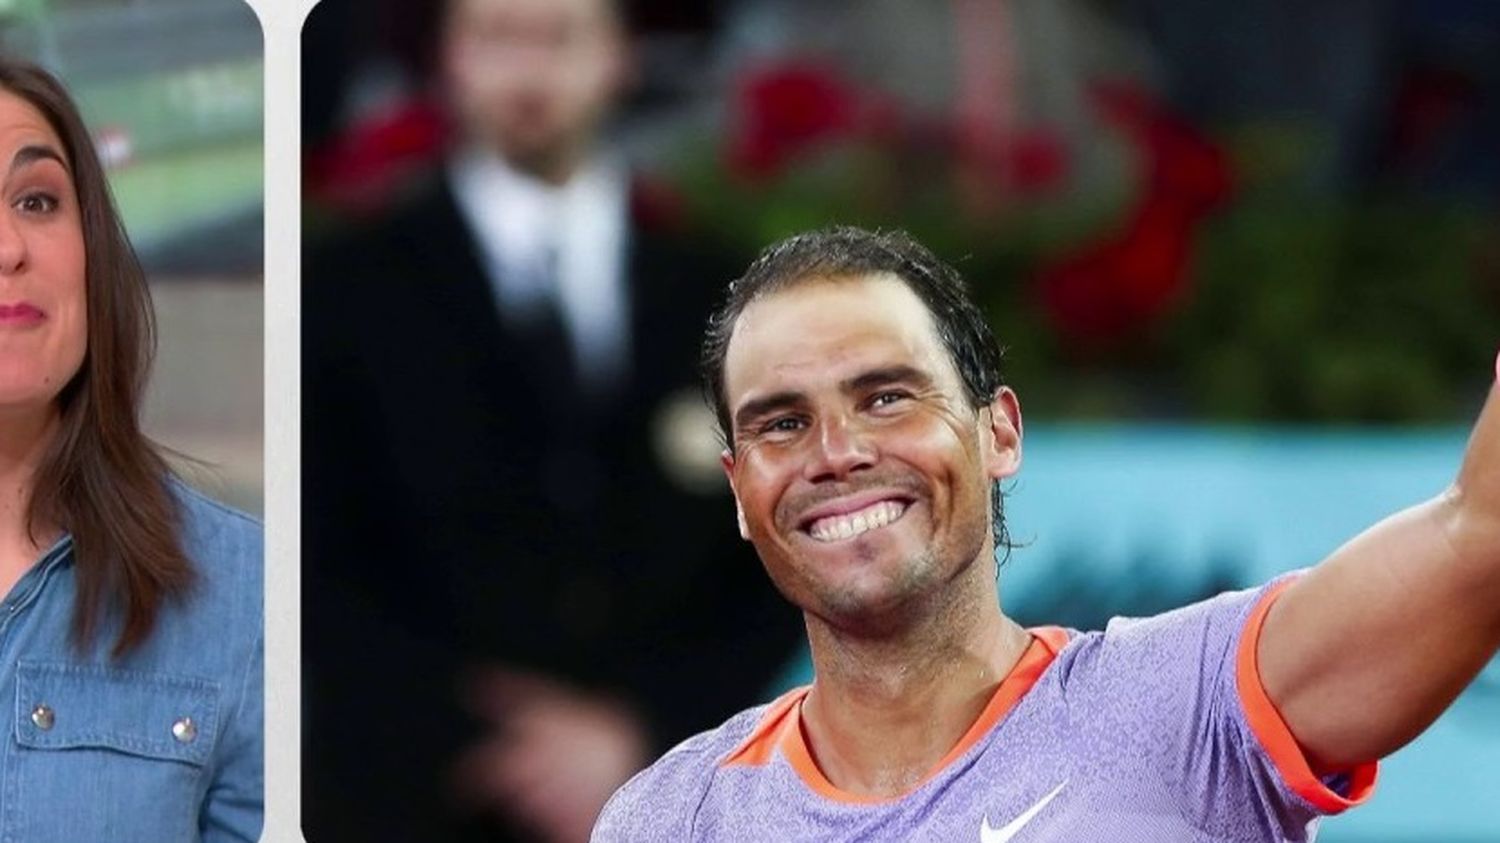 Tennis: in Madrid, Rafael Nadal stays